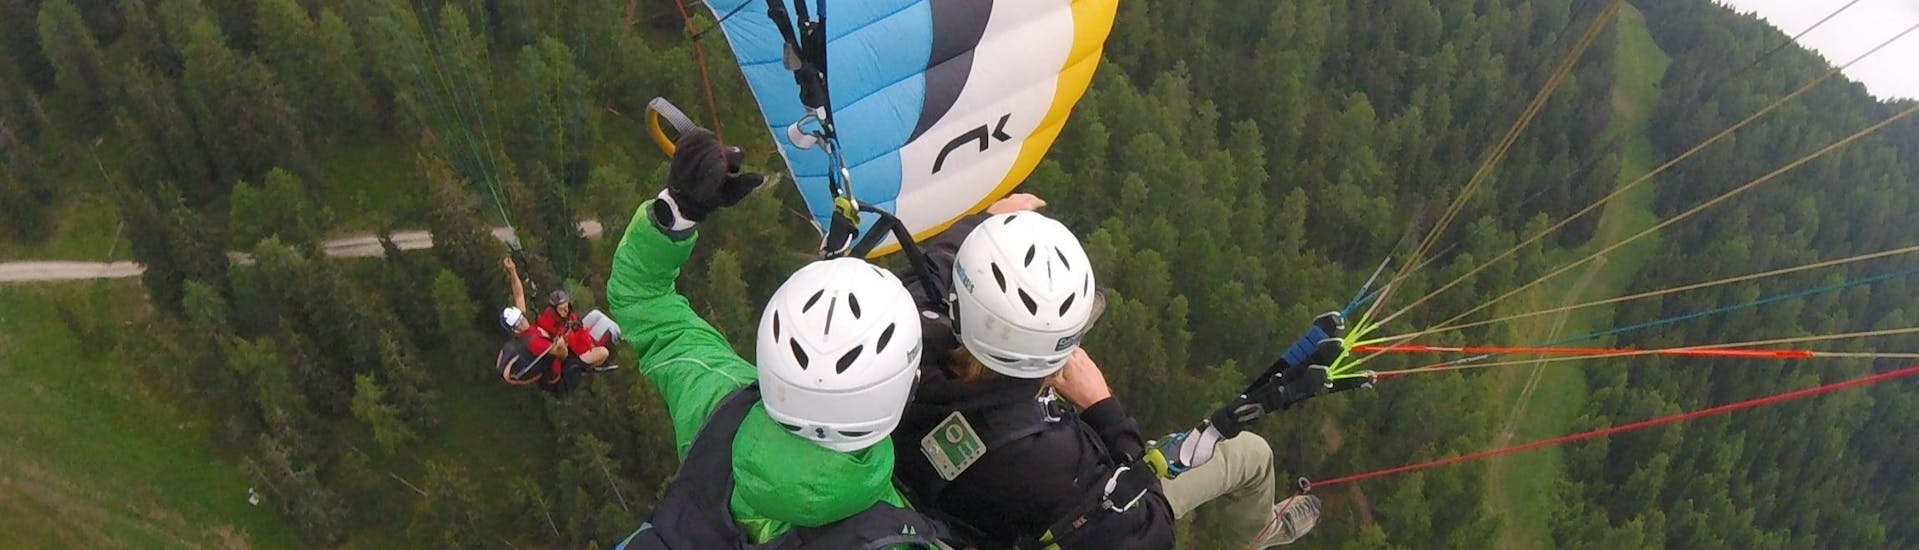 Während des Tandem Paragliding in Pfalzen bei Bruneck mit Tandemflights Kronplatz genießen eine junge Frau und ihr Tandempilot die spektakuläre Aussicht.